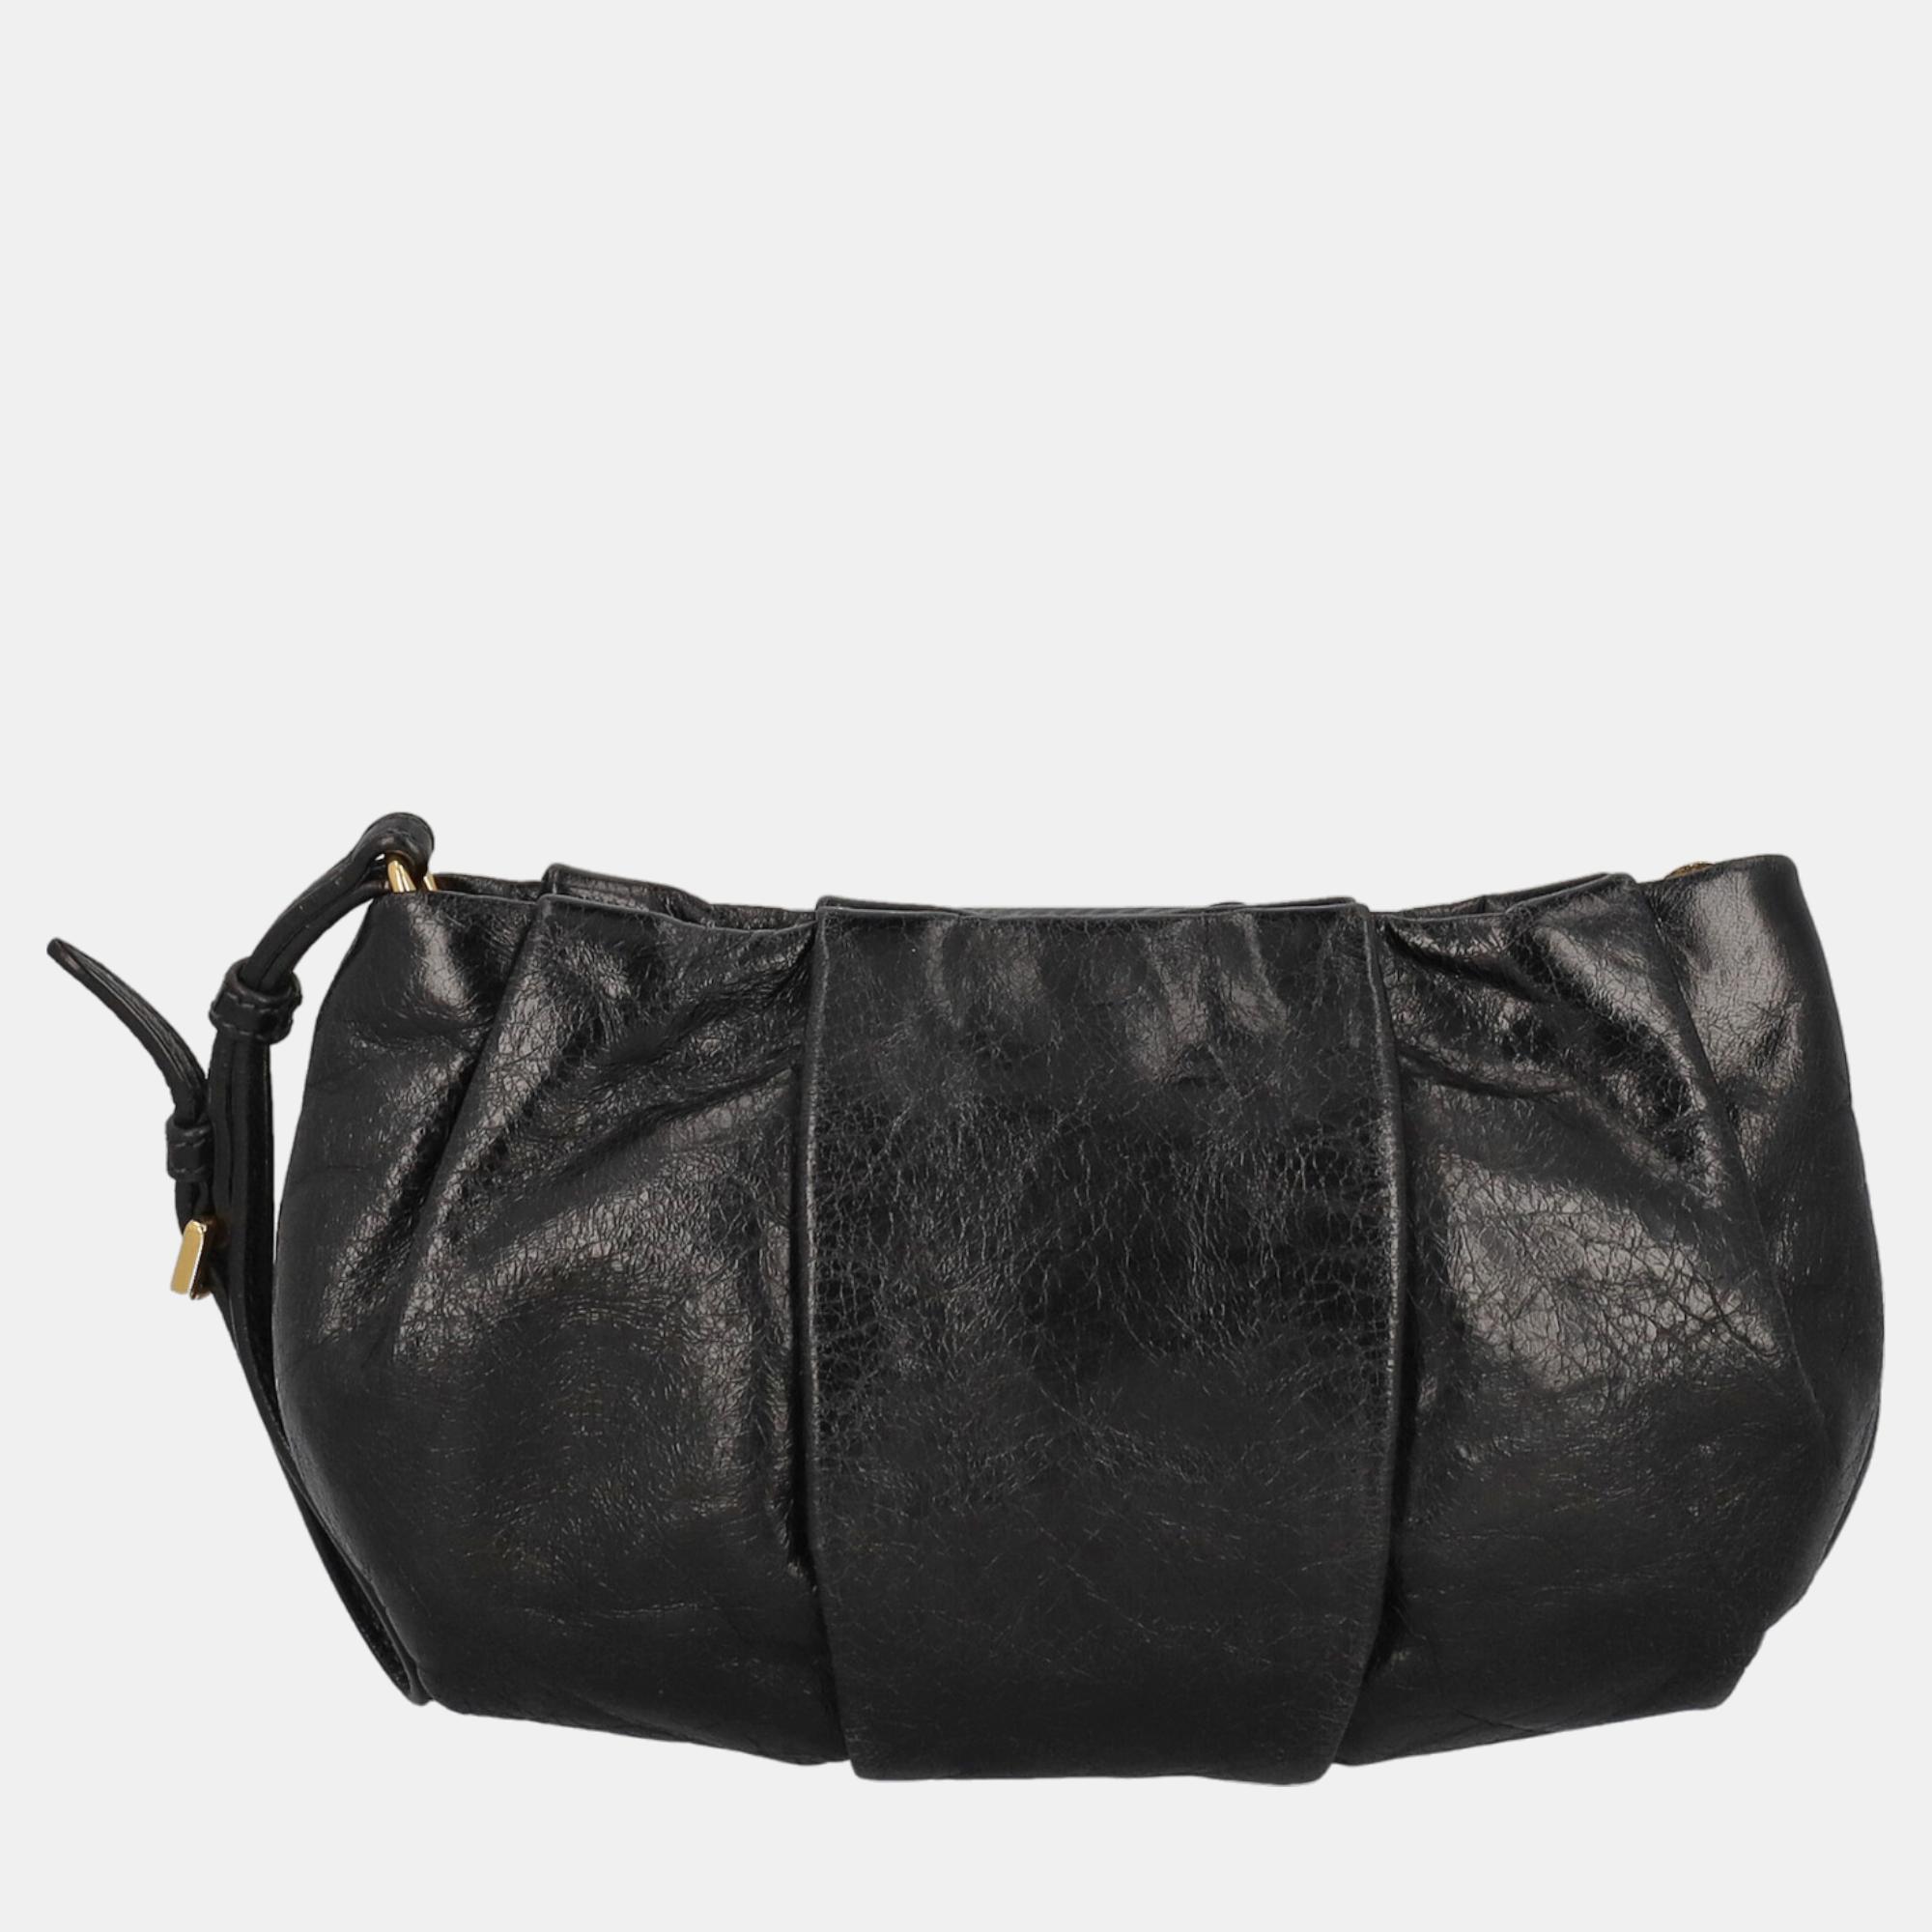 Prada  Women's Leather Clutch Bag - Black - One Size